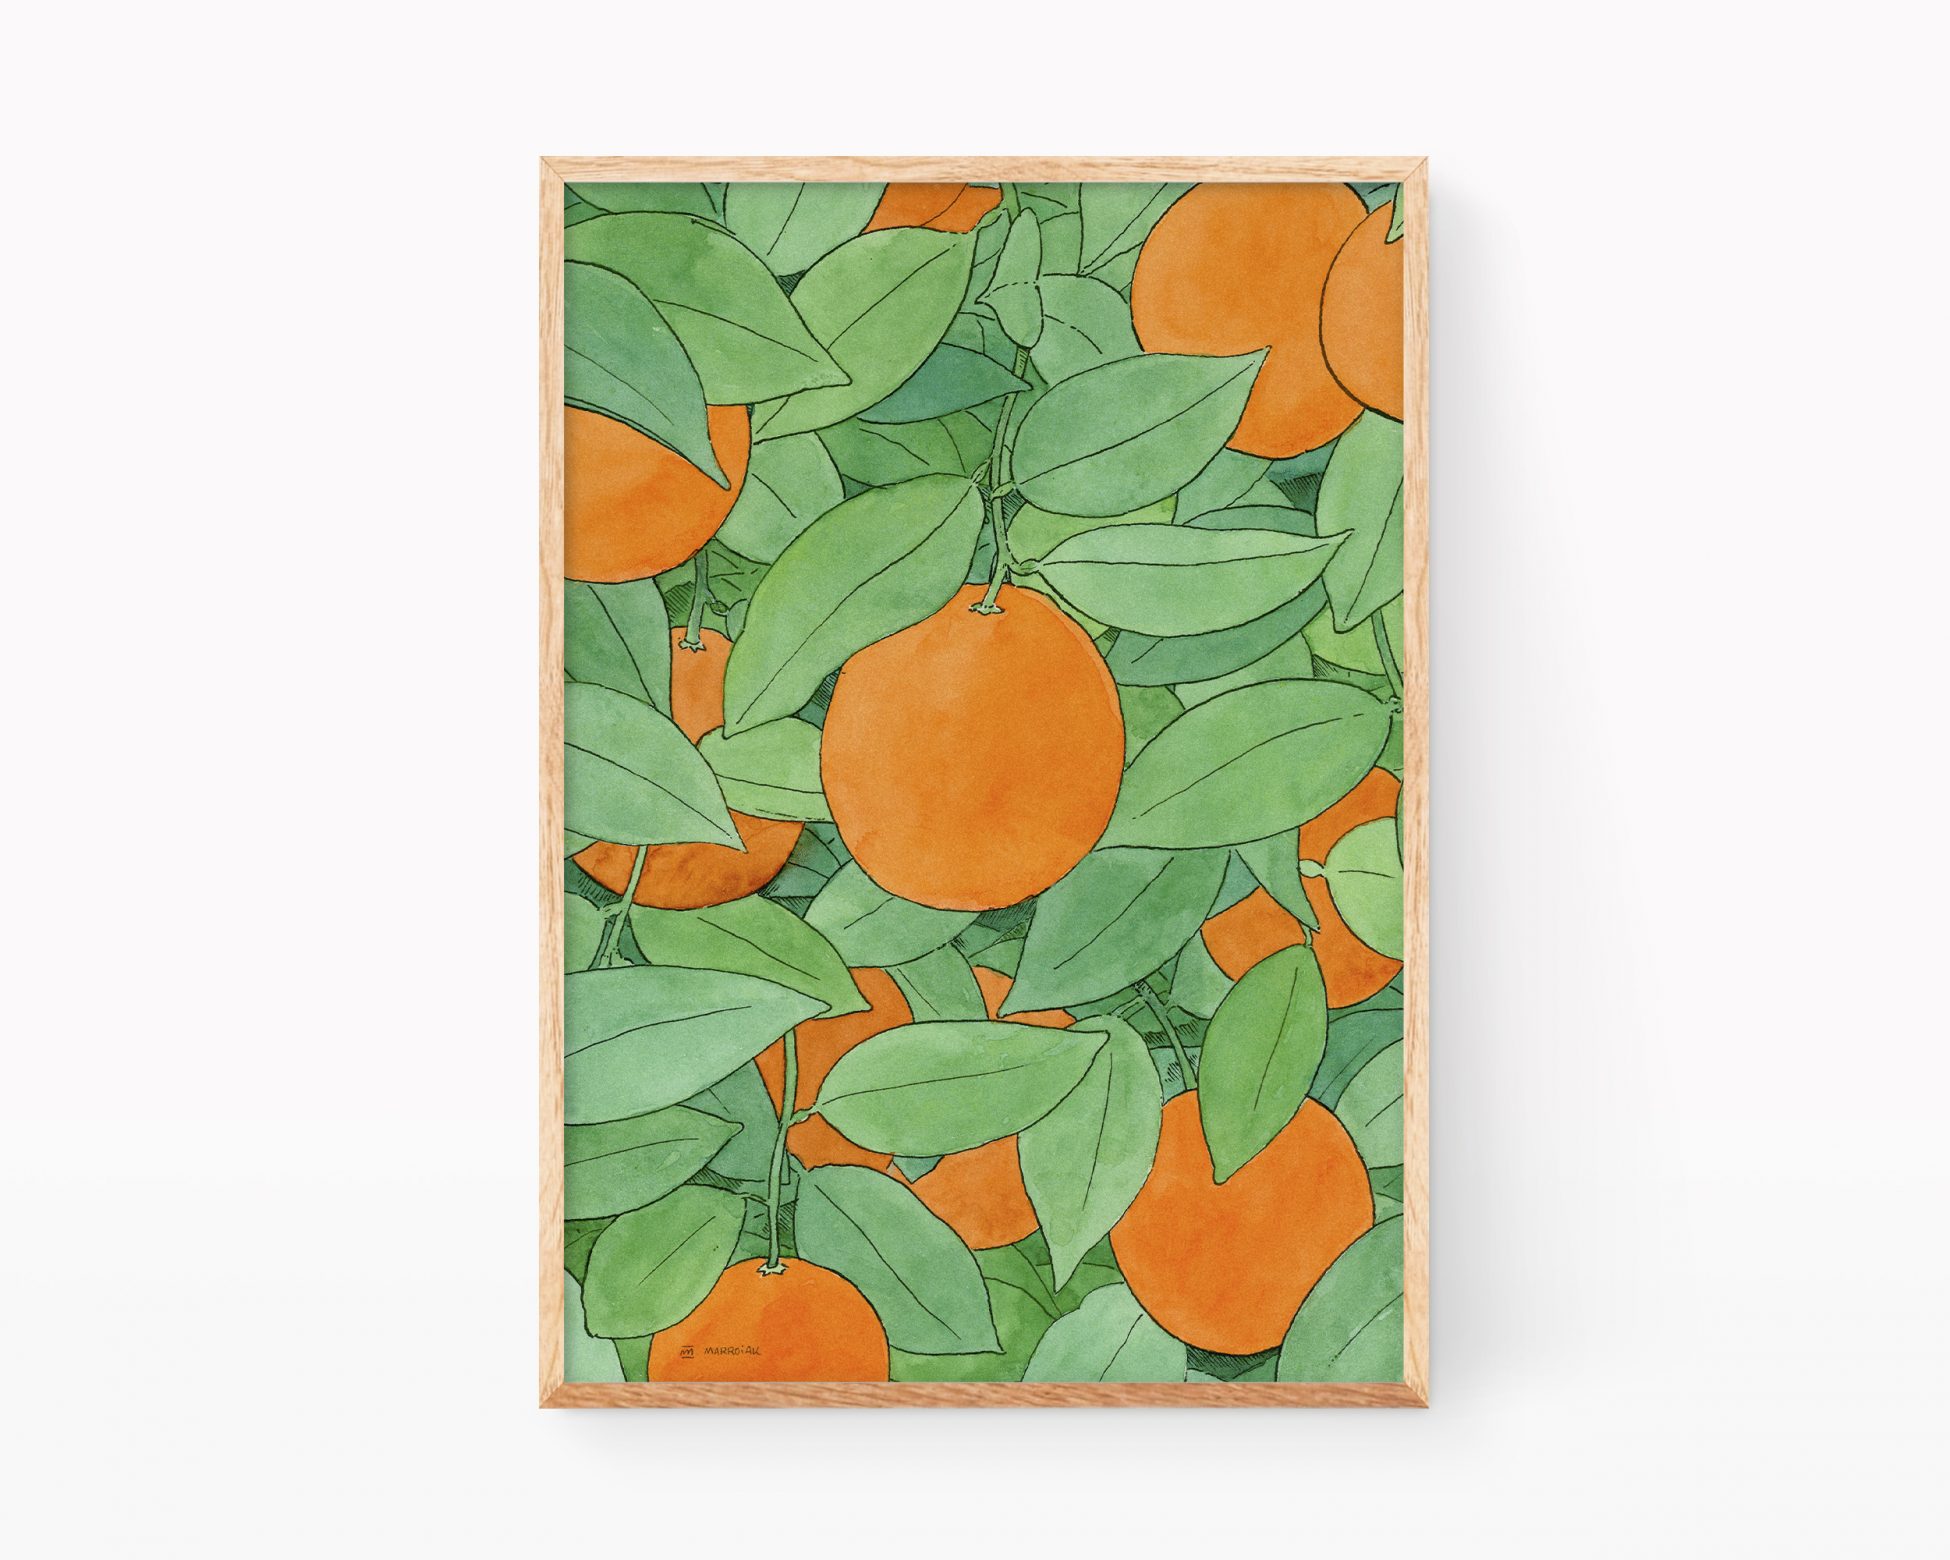 Cuadro decorativo para cocinas con una lámina ilustración de unas naranjas y hojas de naranjo en el árbol. Prints de cultura y agricultura valenciana. Dibujo en acuarela.